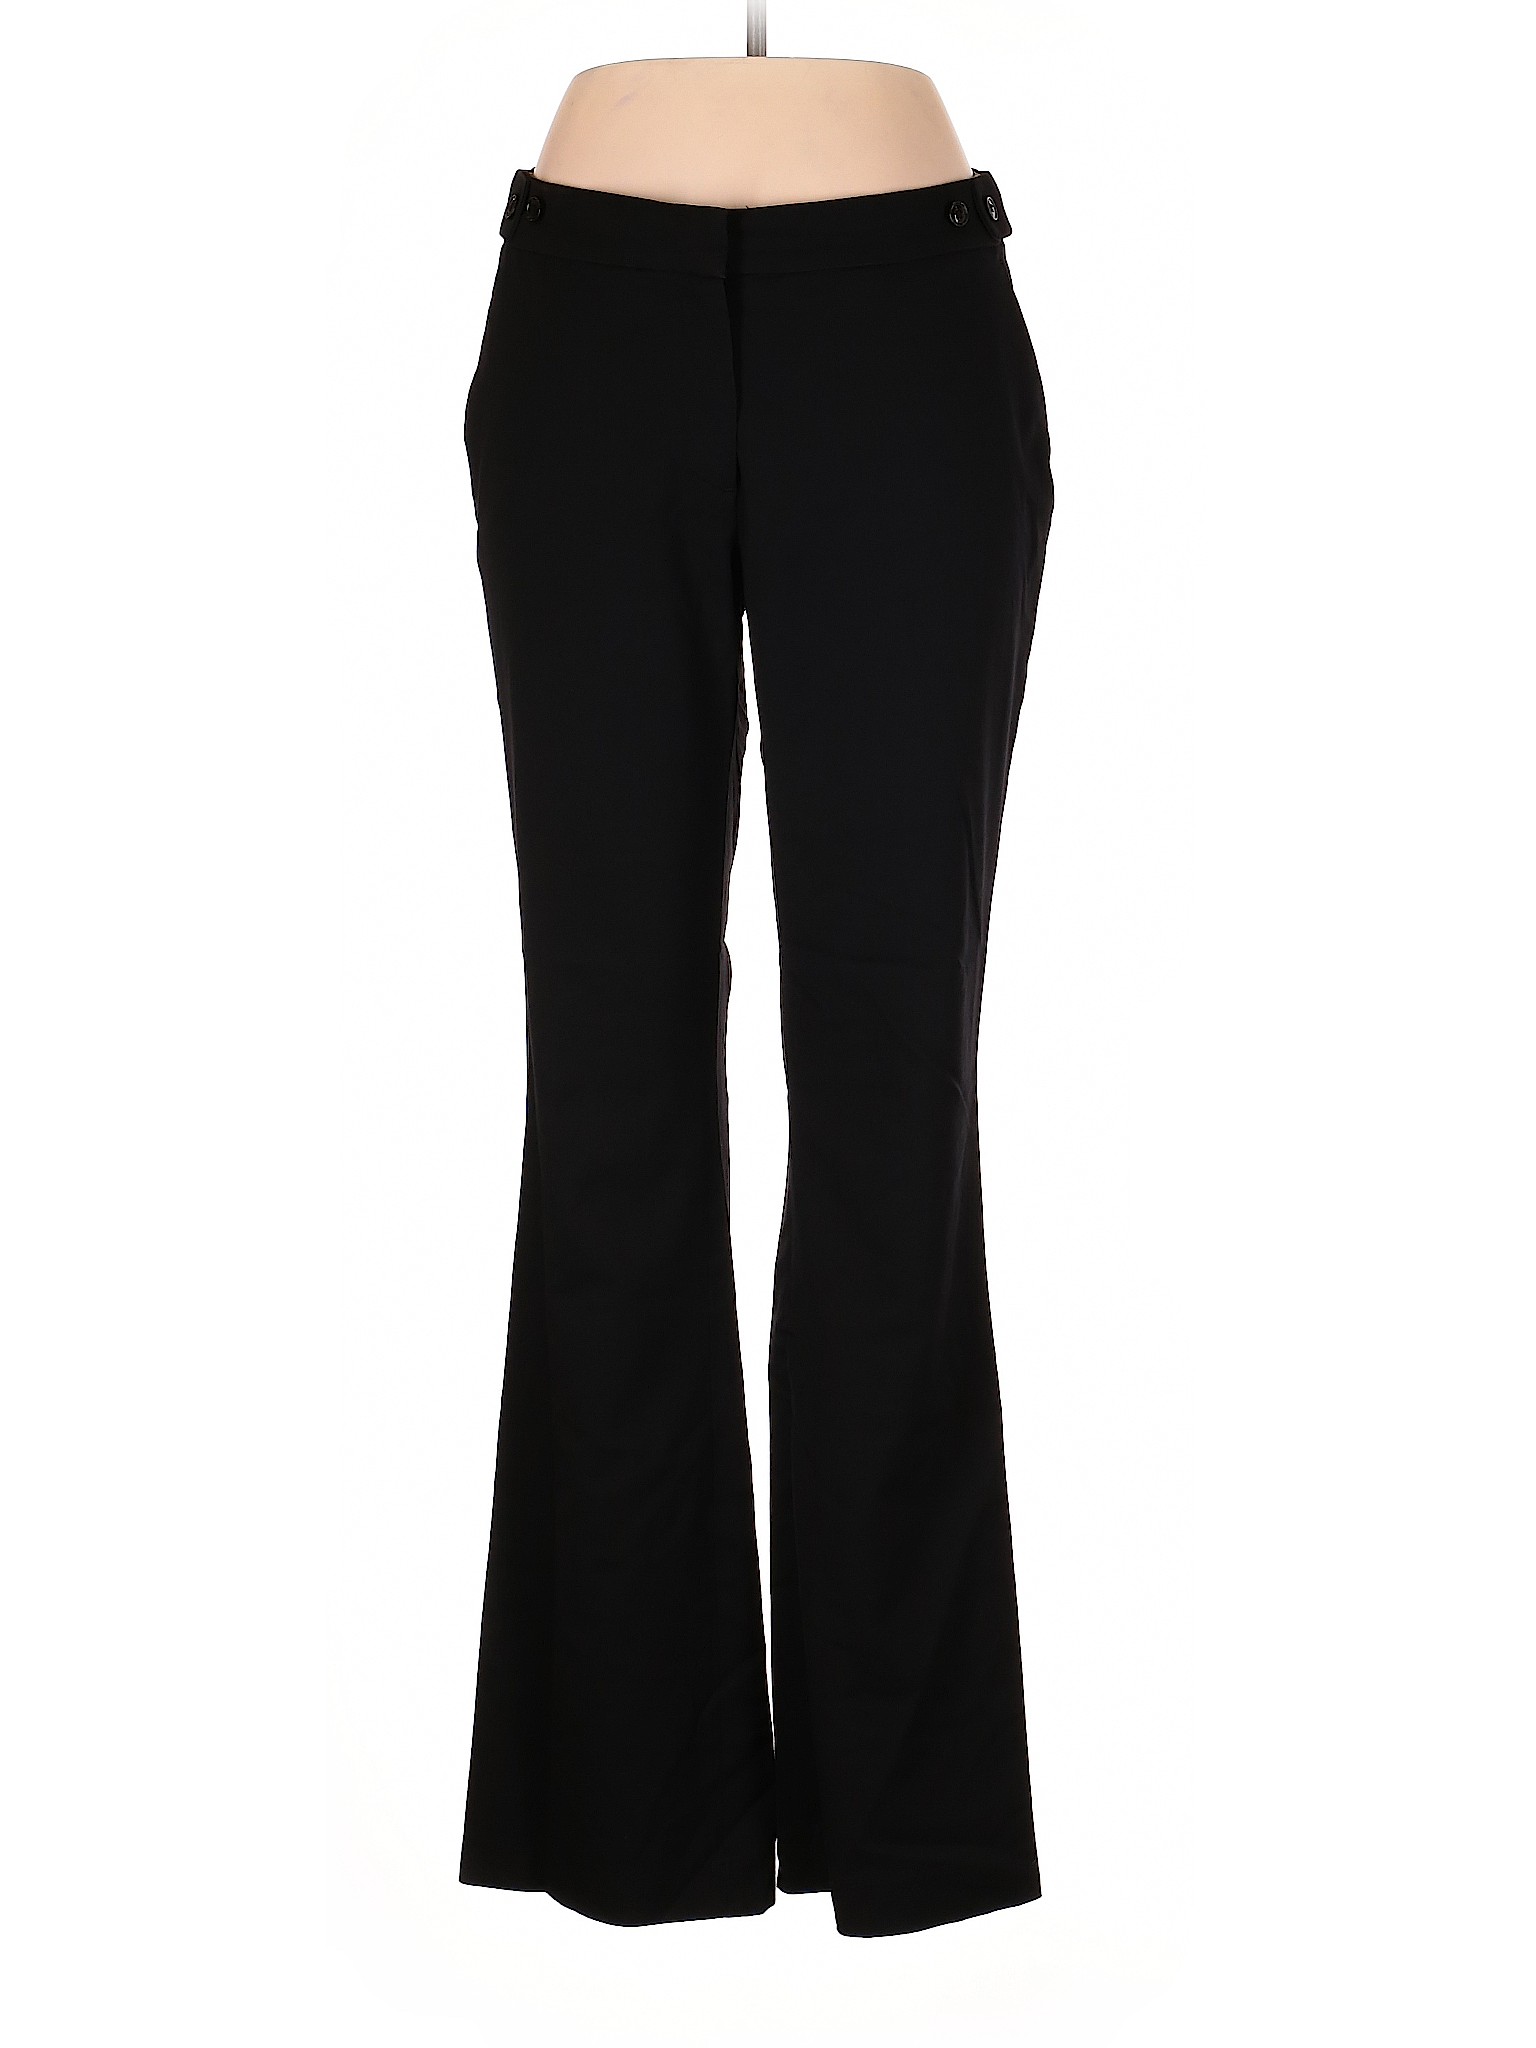 H&M Women Black Dress Pants 12 | eBay